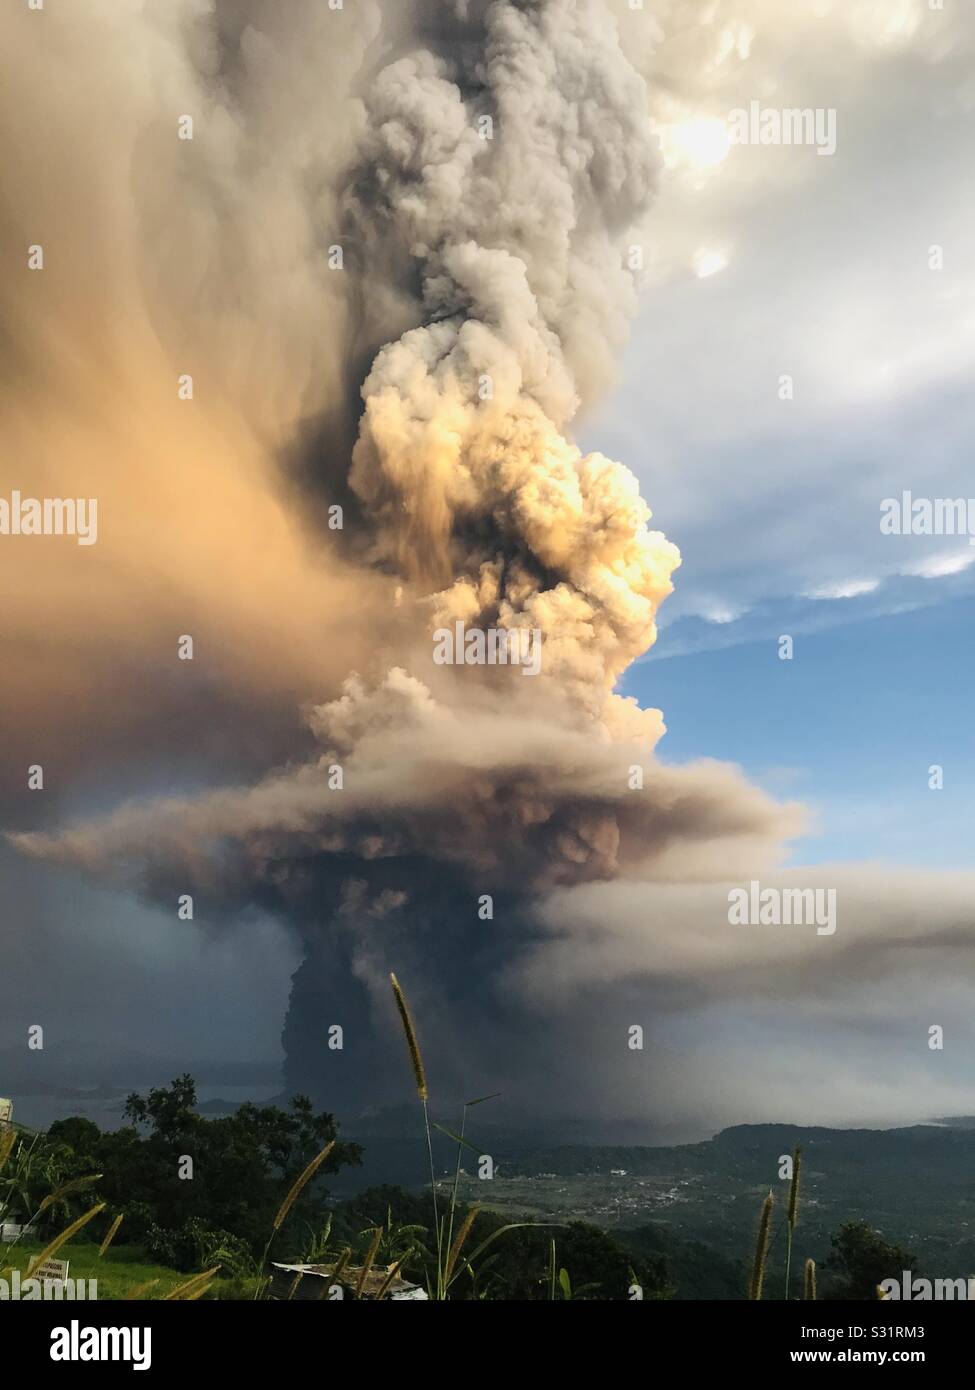 Il Vulcano Taal nelle Filippine è scoppiata. Produca arrabbiato ceneri che raggiunge il cielo. Ciò che sta accadendo al mondo? Quando possiamo iniziare a prendere iniziative collettive per salvare il pianeta? Foto Stock